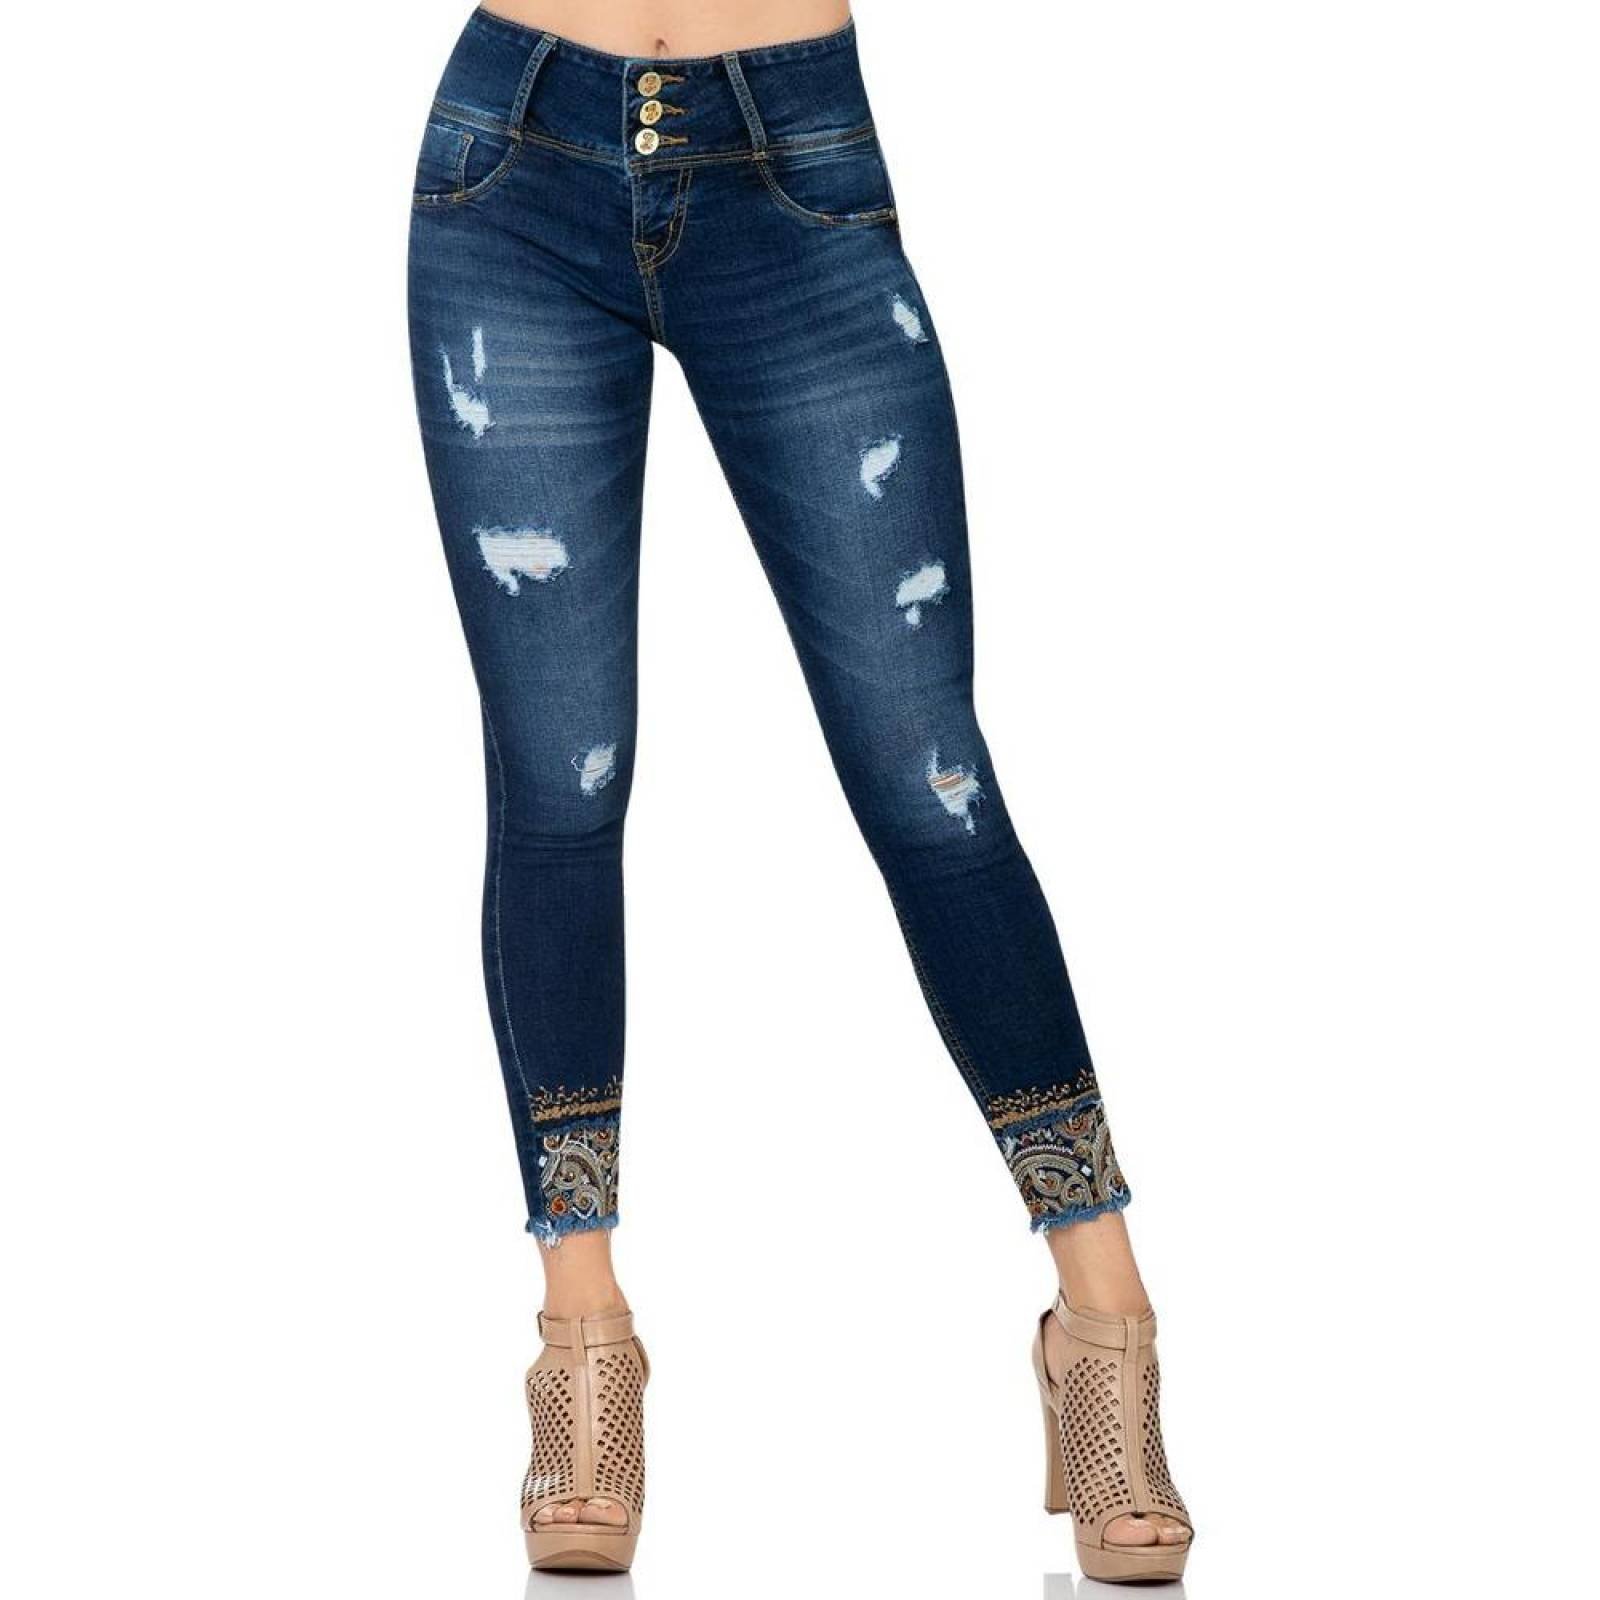 Jeans Moda Mujer Salvaje Tentación Indigo 71803315 Mezclilla Stretch 